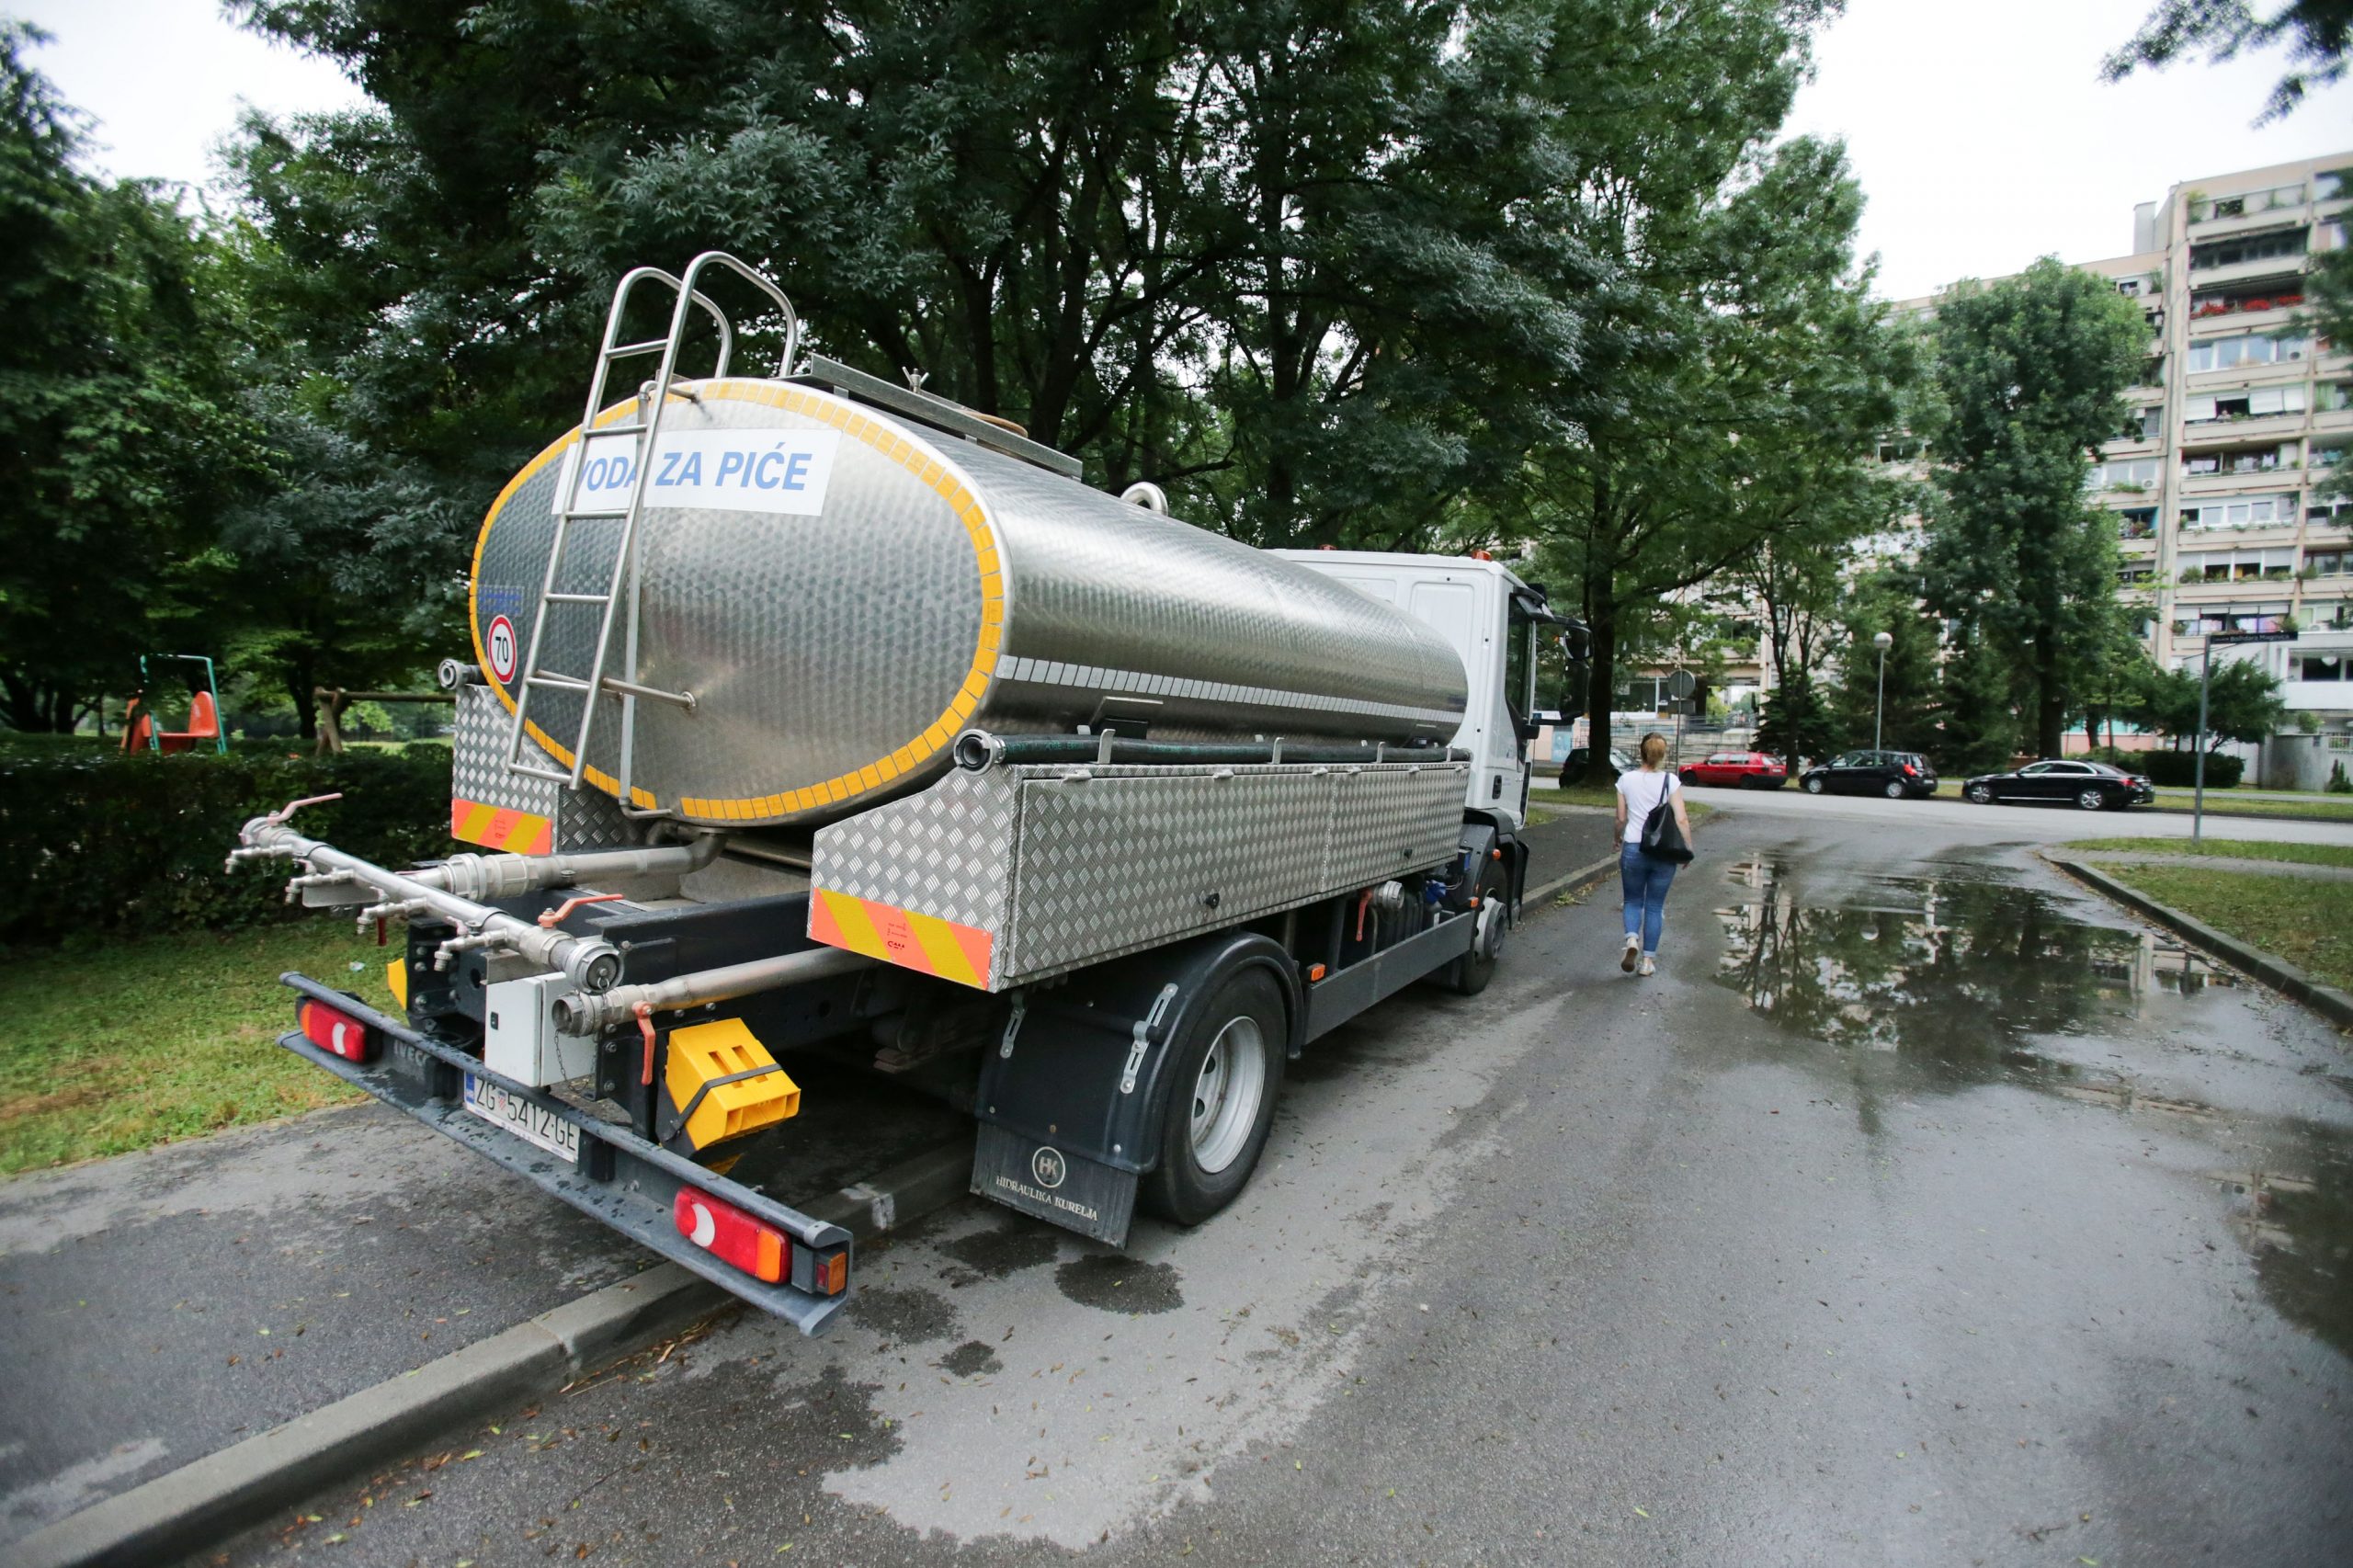 09.07.2019., Zagreb -  Cisterna sa vodom u Novom Zagrebu koja opskrbljuje gradjane pitkom vodom. Photo: Filip Kos/PIXSELL